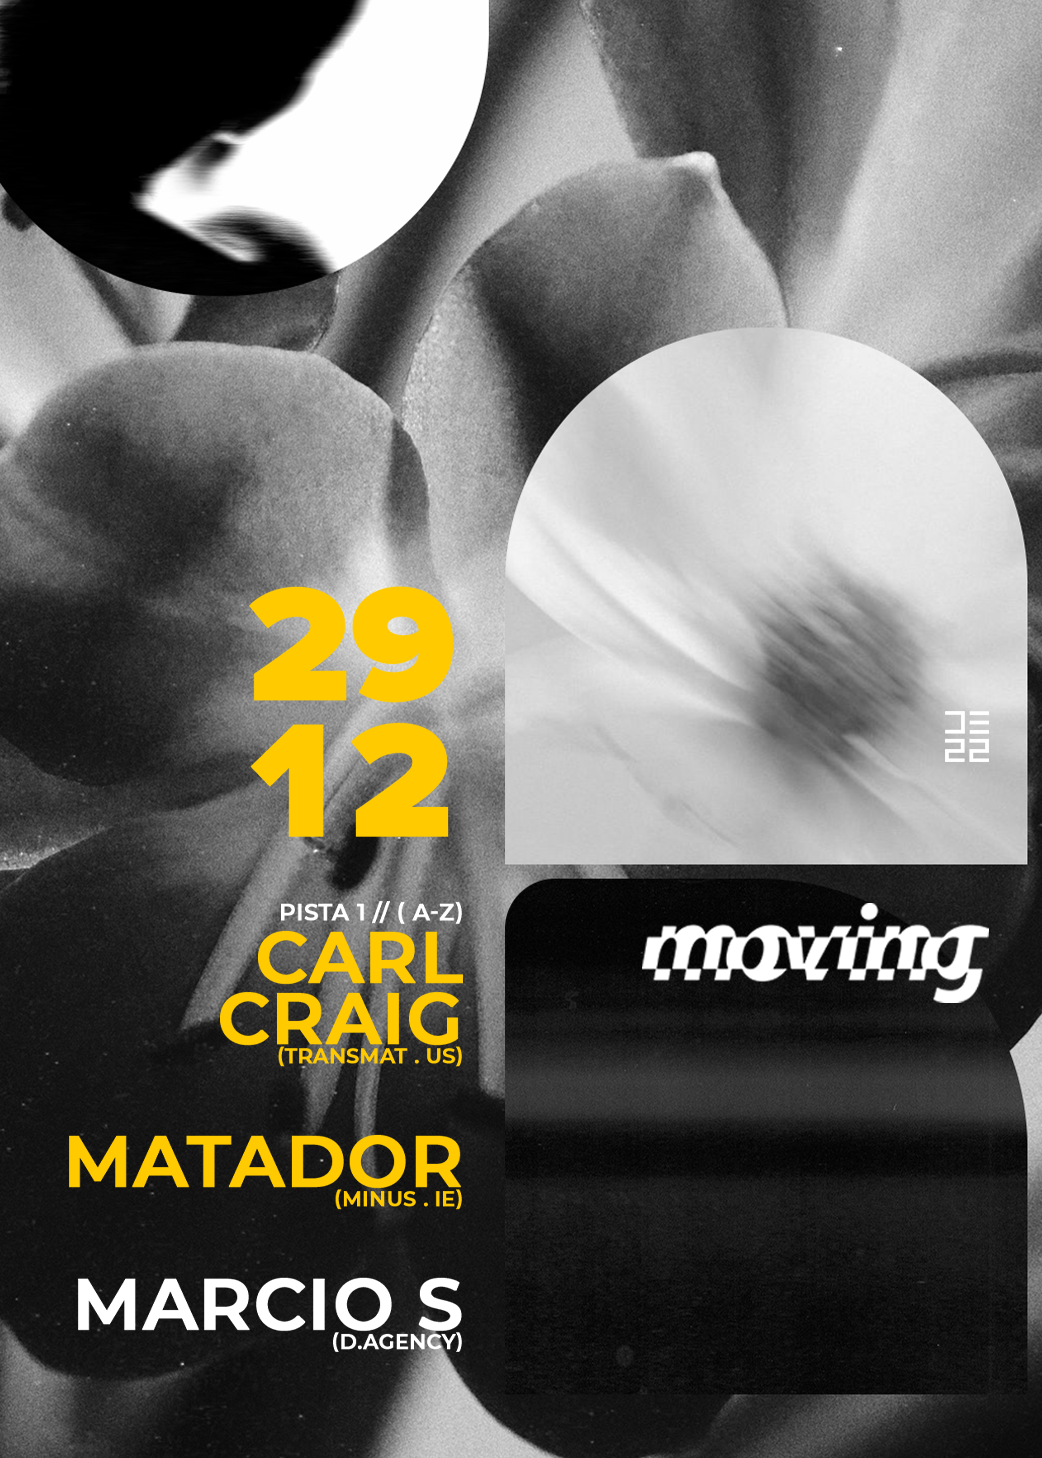 MOVING with Carl Craig, Matador & Marcio S - Página frontal